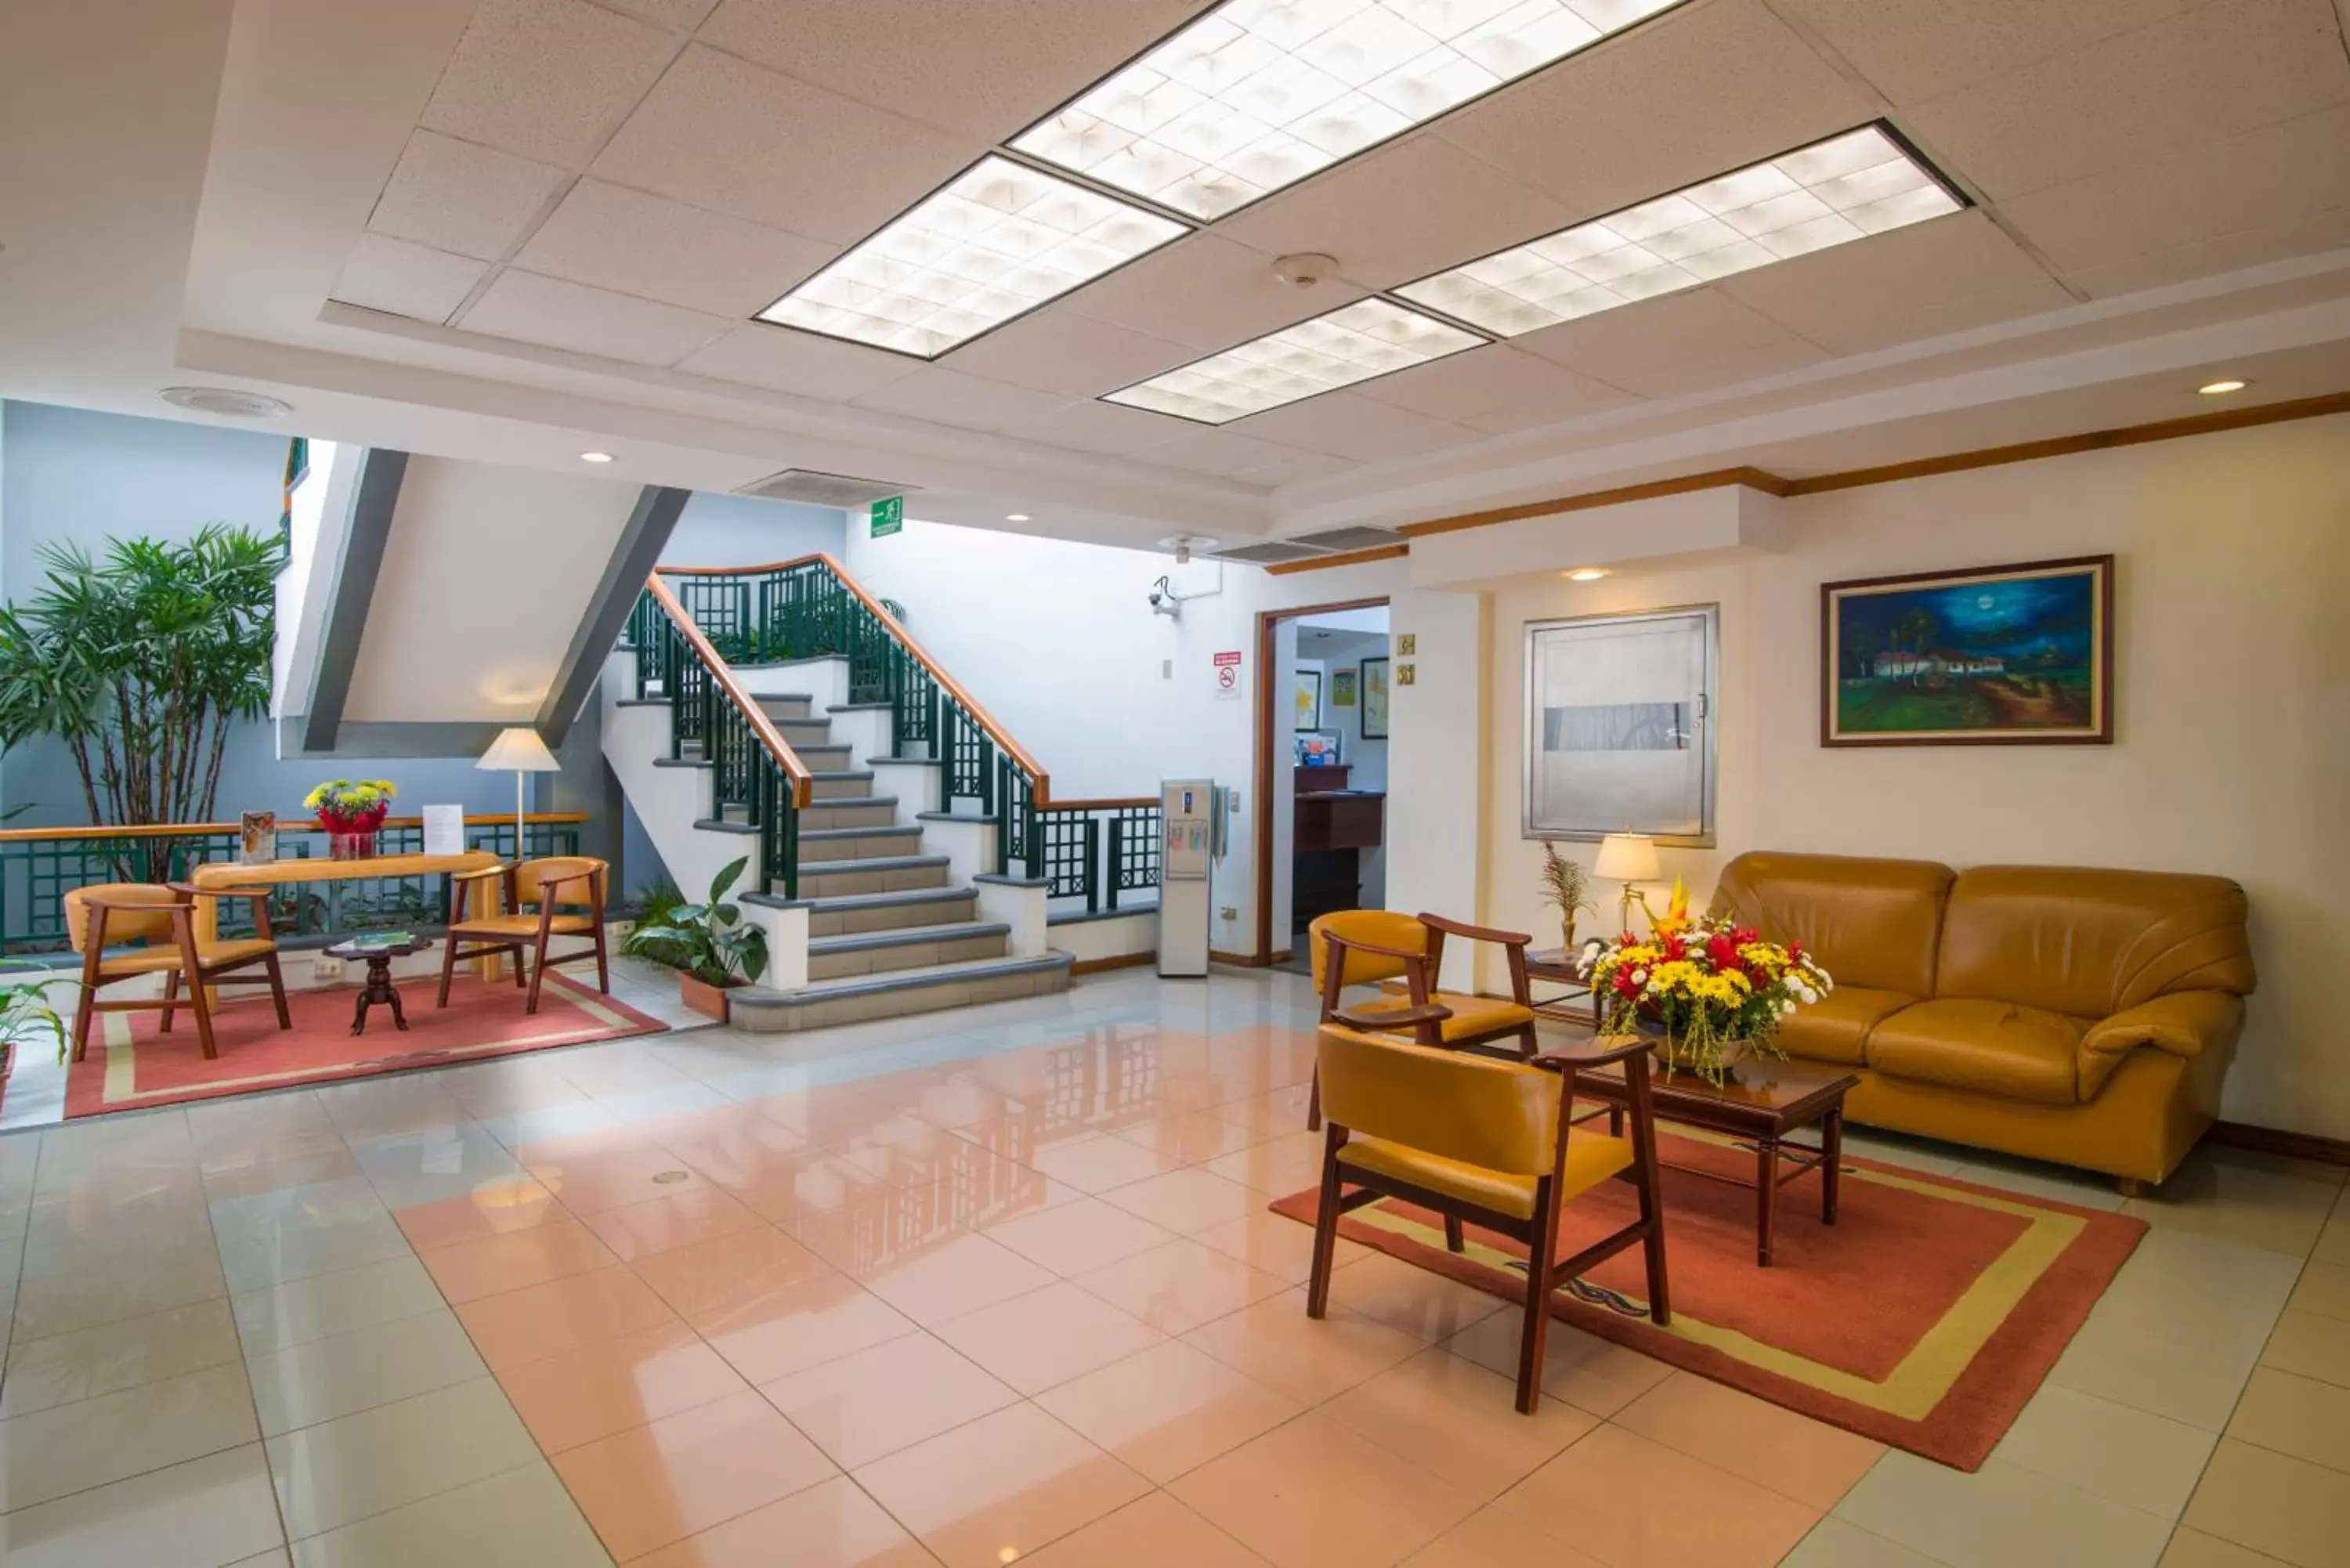 Lobby or reception, Lobby/Reception in Apartotel & Suites Villas del Rio